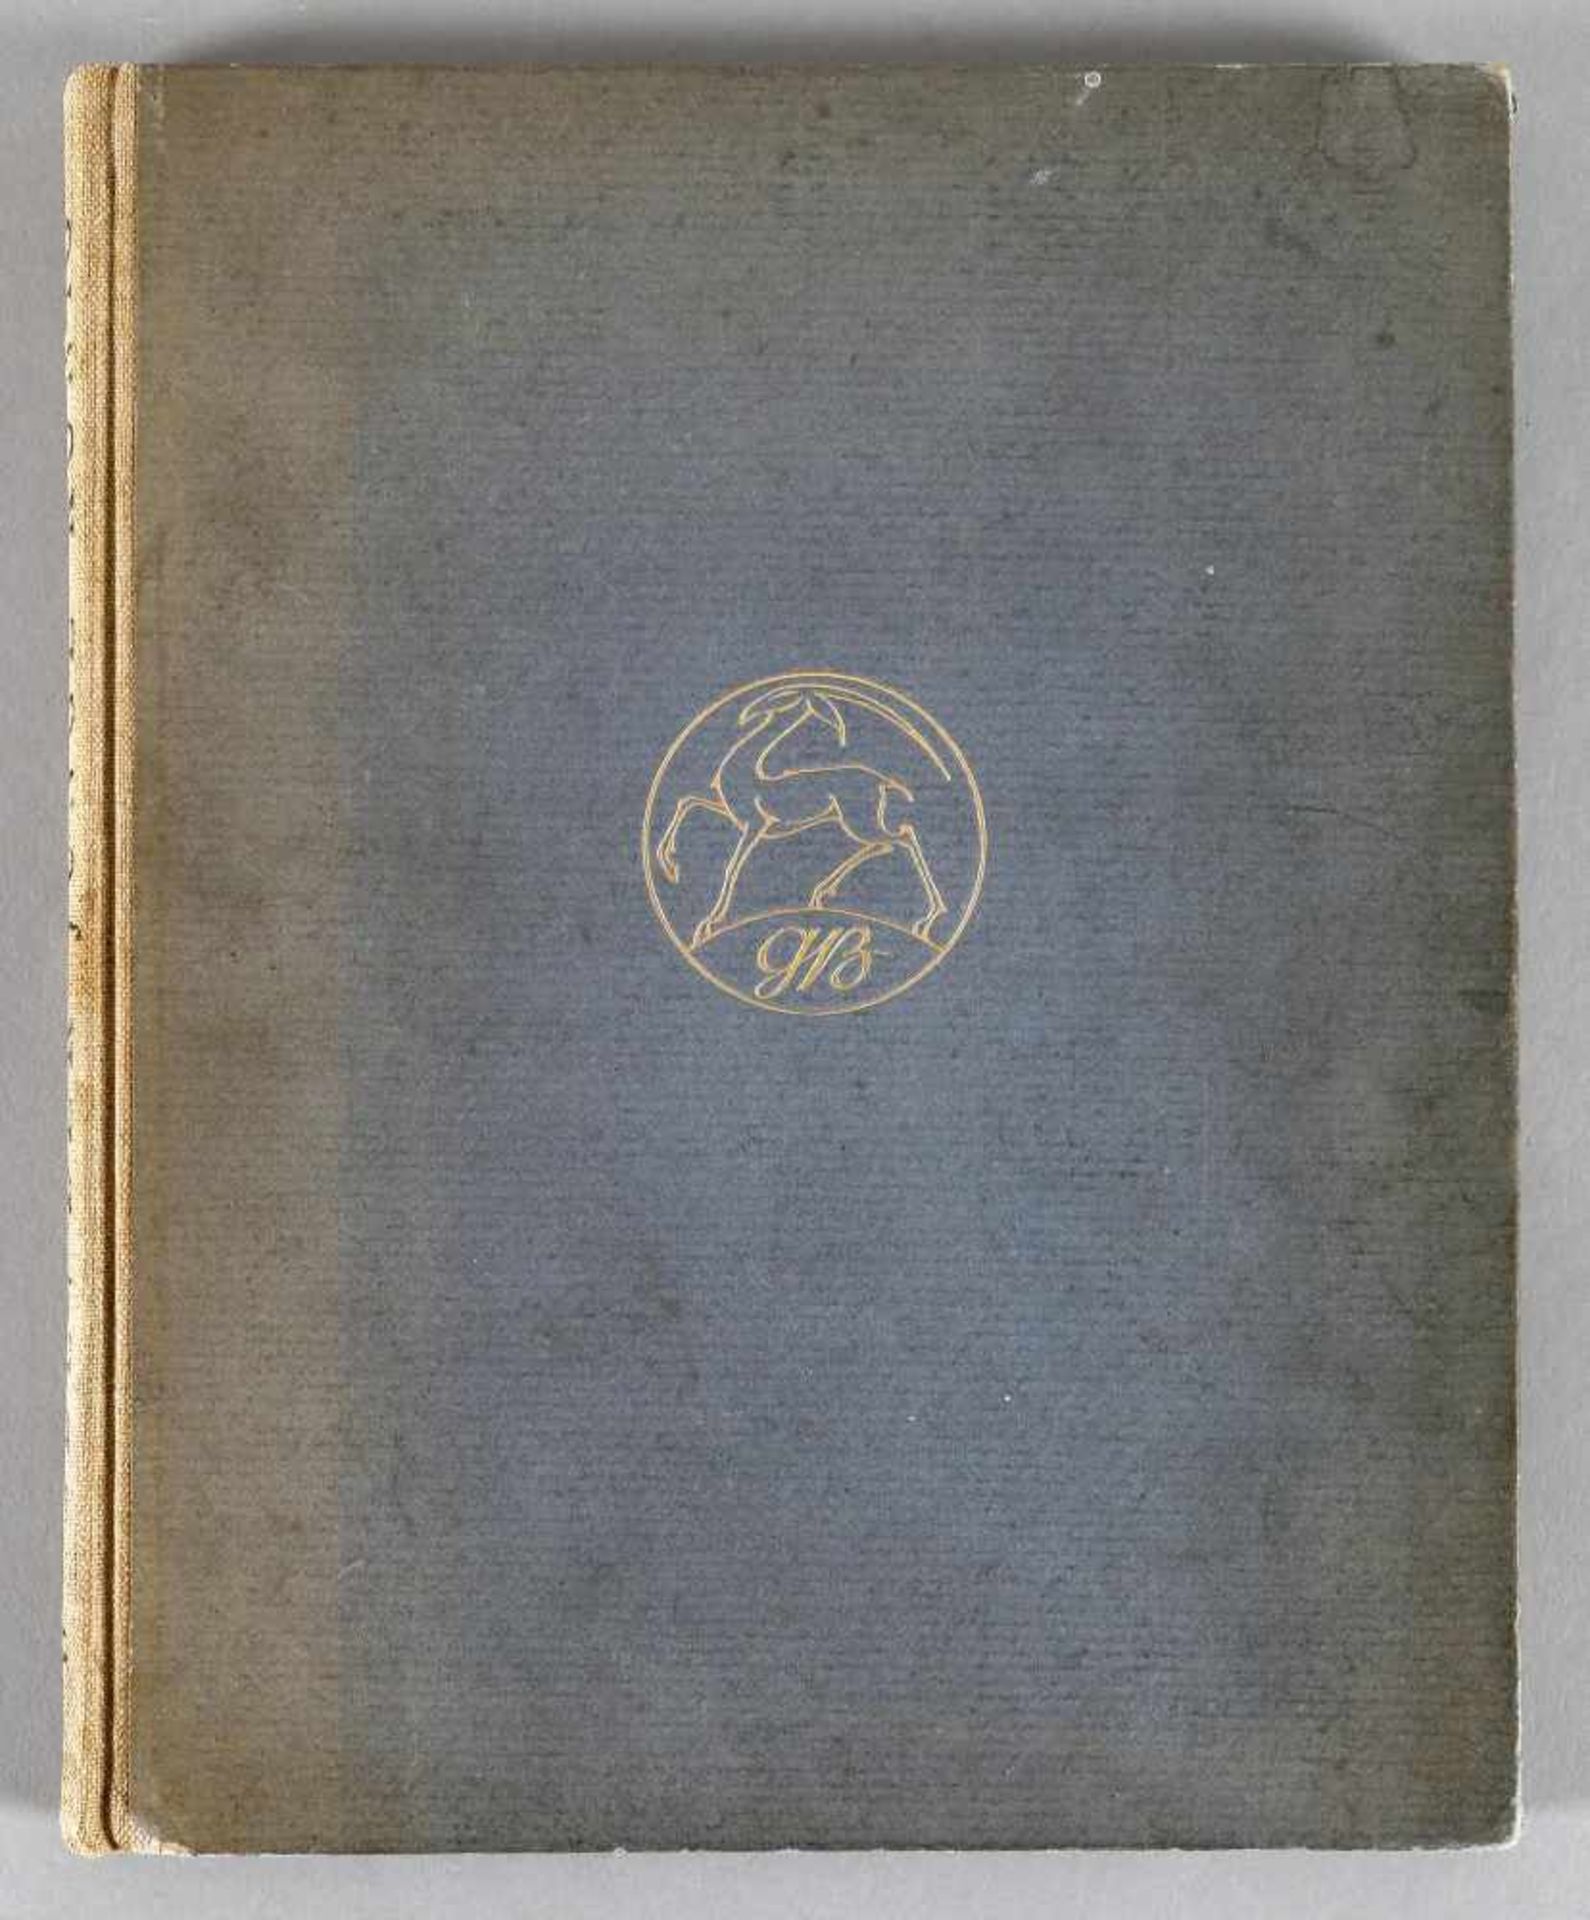 Oscar Wilde, Der junge König, mit Original-Lithographien, Vignetten und Initialen von Charlotte - Image 2 of 2